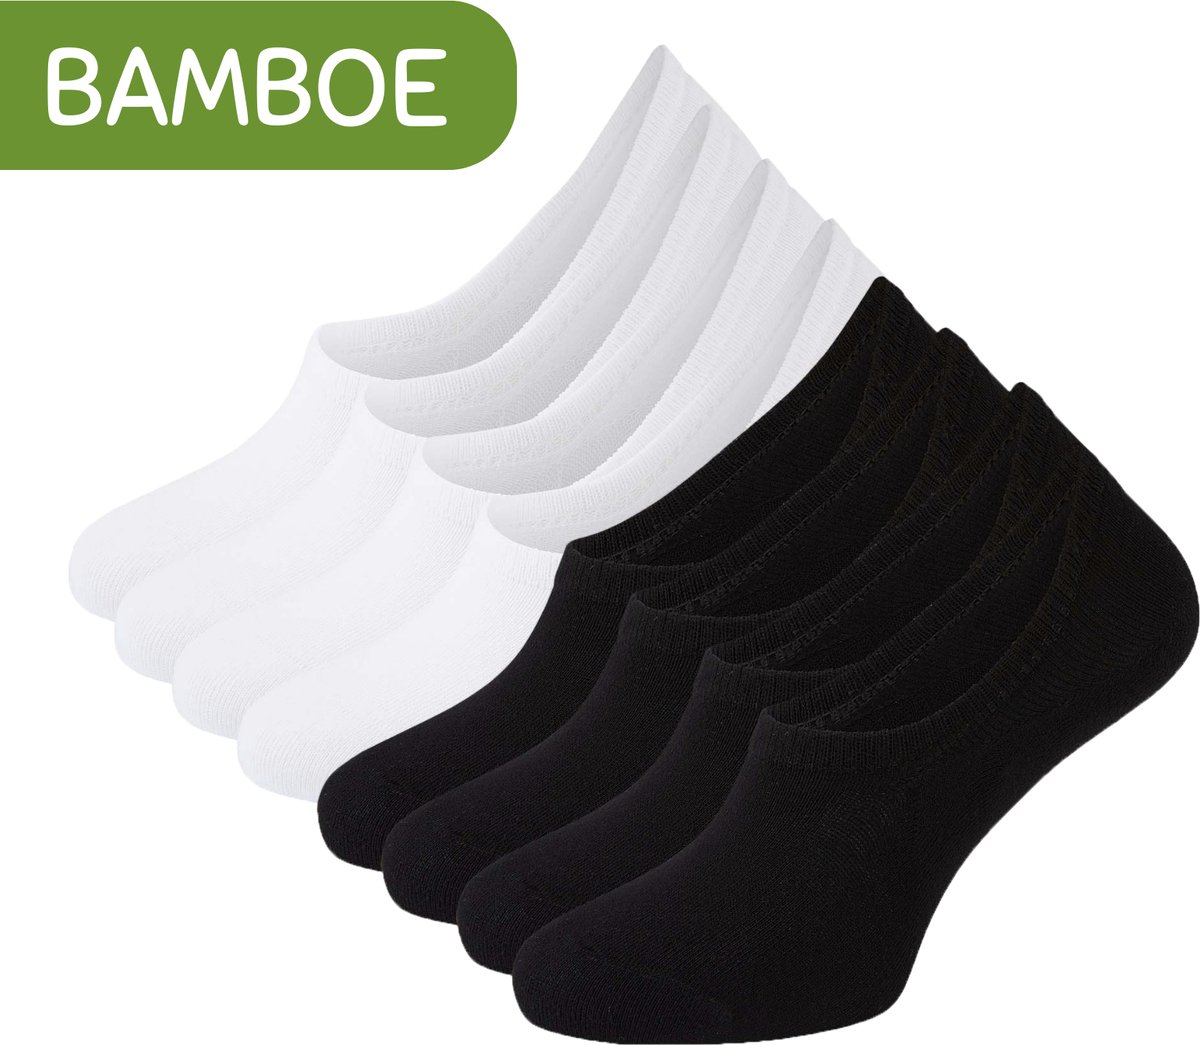 Sokjes.nl ® Bamboe no-show Footies - 8 paar - Zwart/wit (Combipack) - 39-42 - Sokken